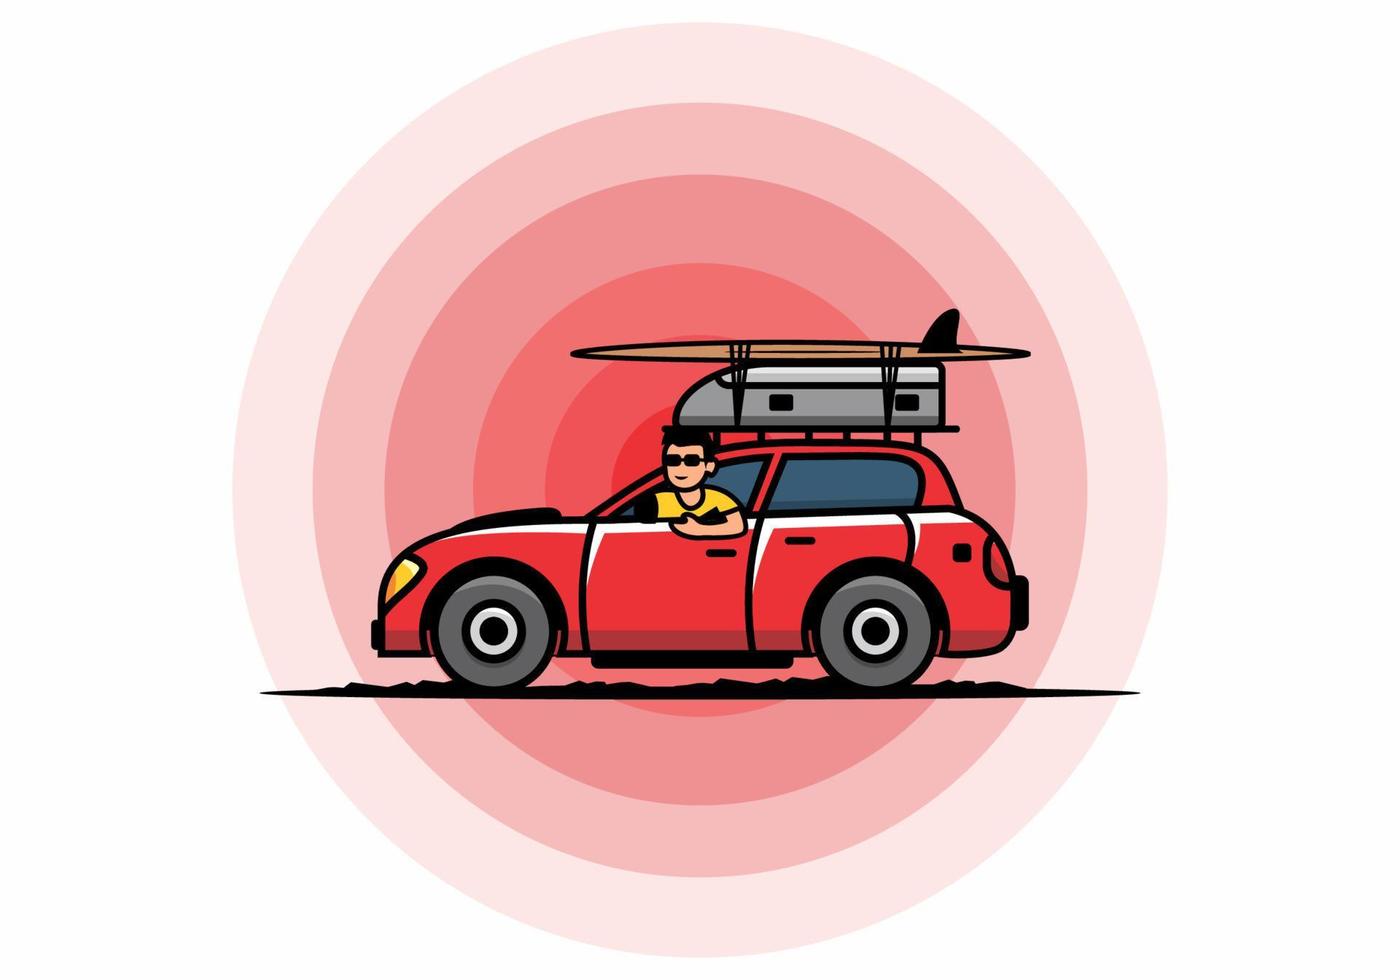 illustrazione di un uomo che guida un'auto per le vacanze vettore